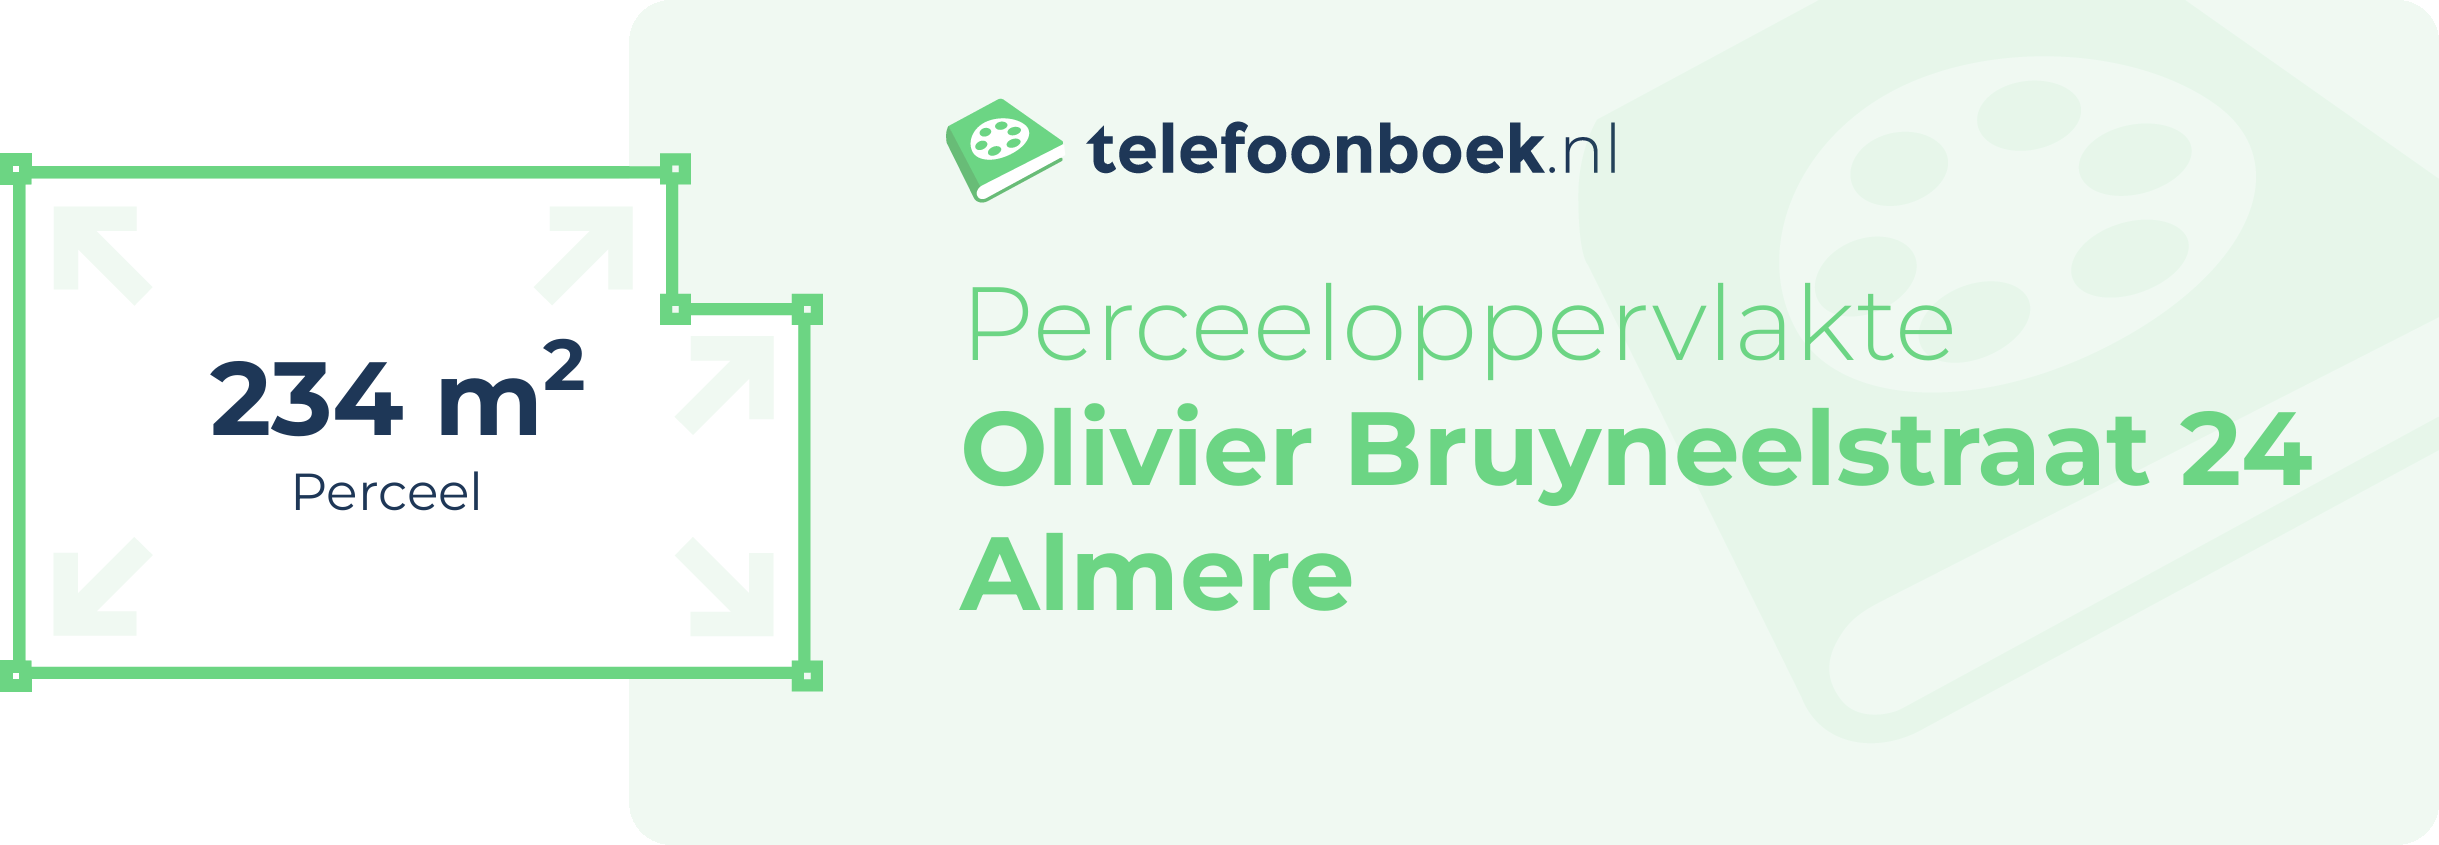 Perceeloppervlakte Olivier Bruyneelstraat 24 Almere